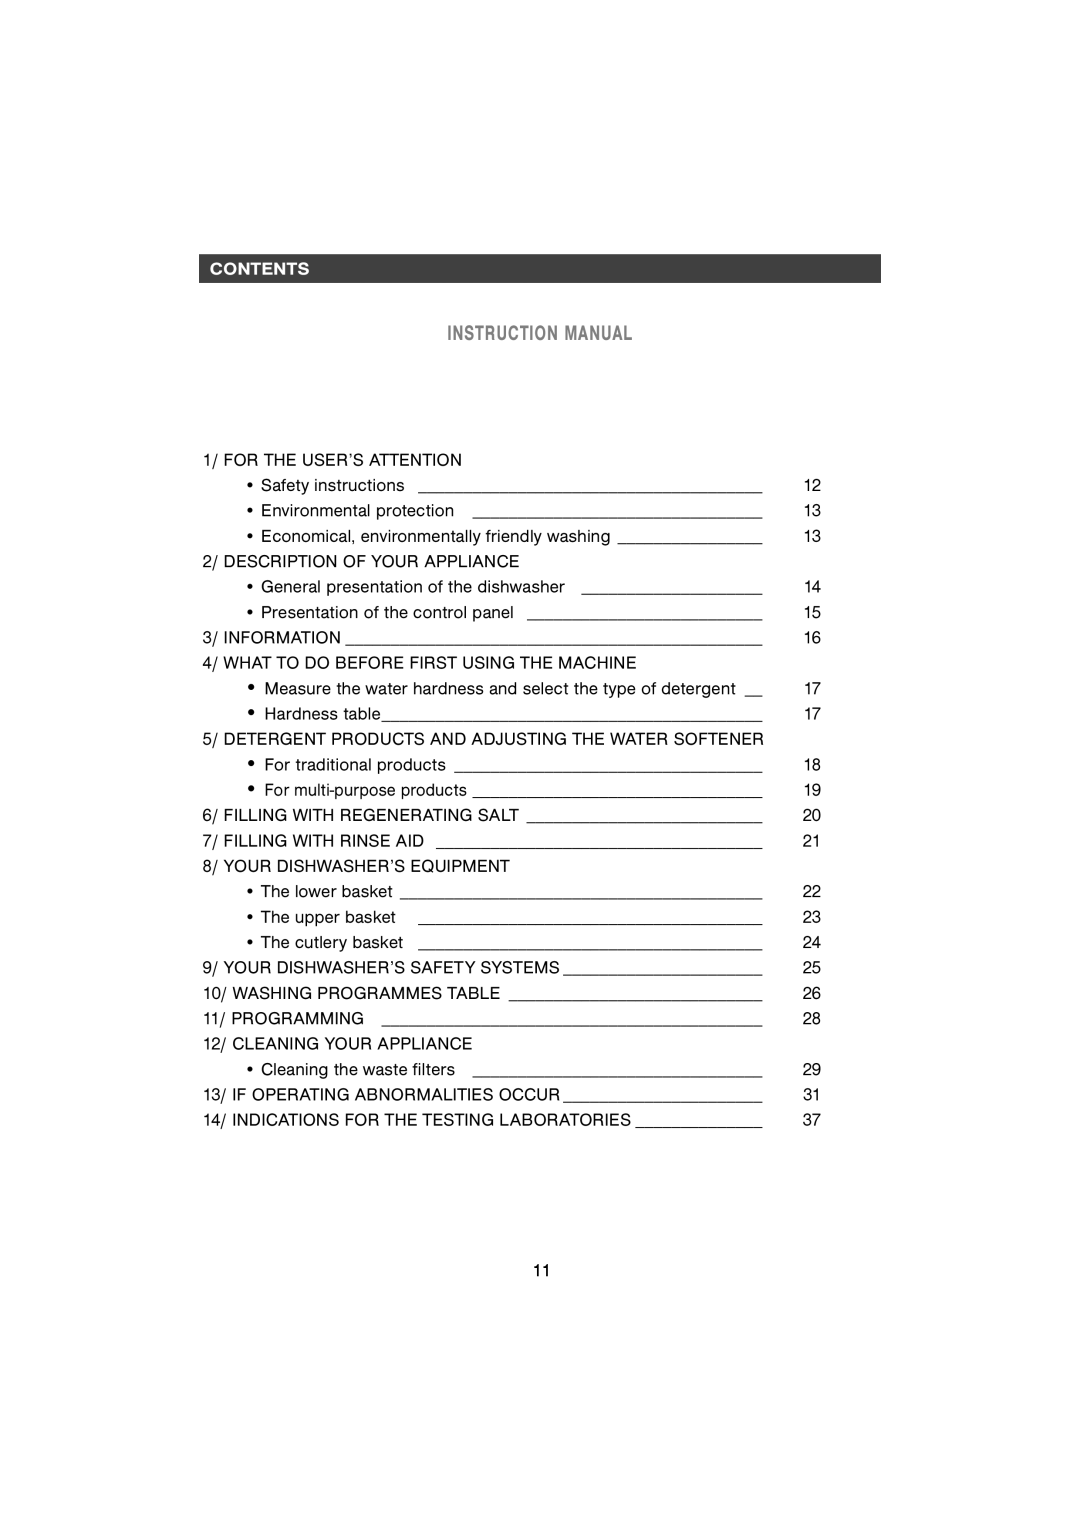 CDA WF250SS manual Contentscontents 